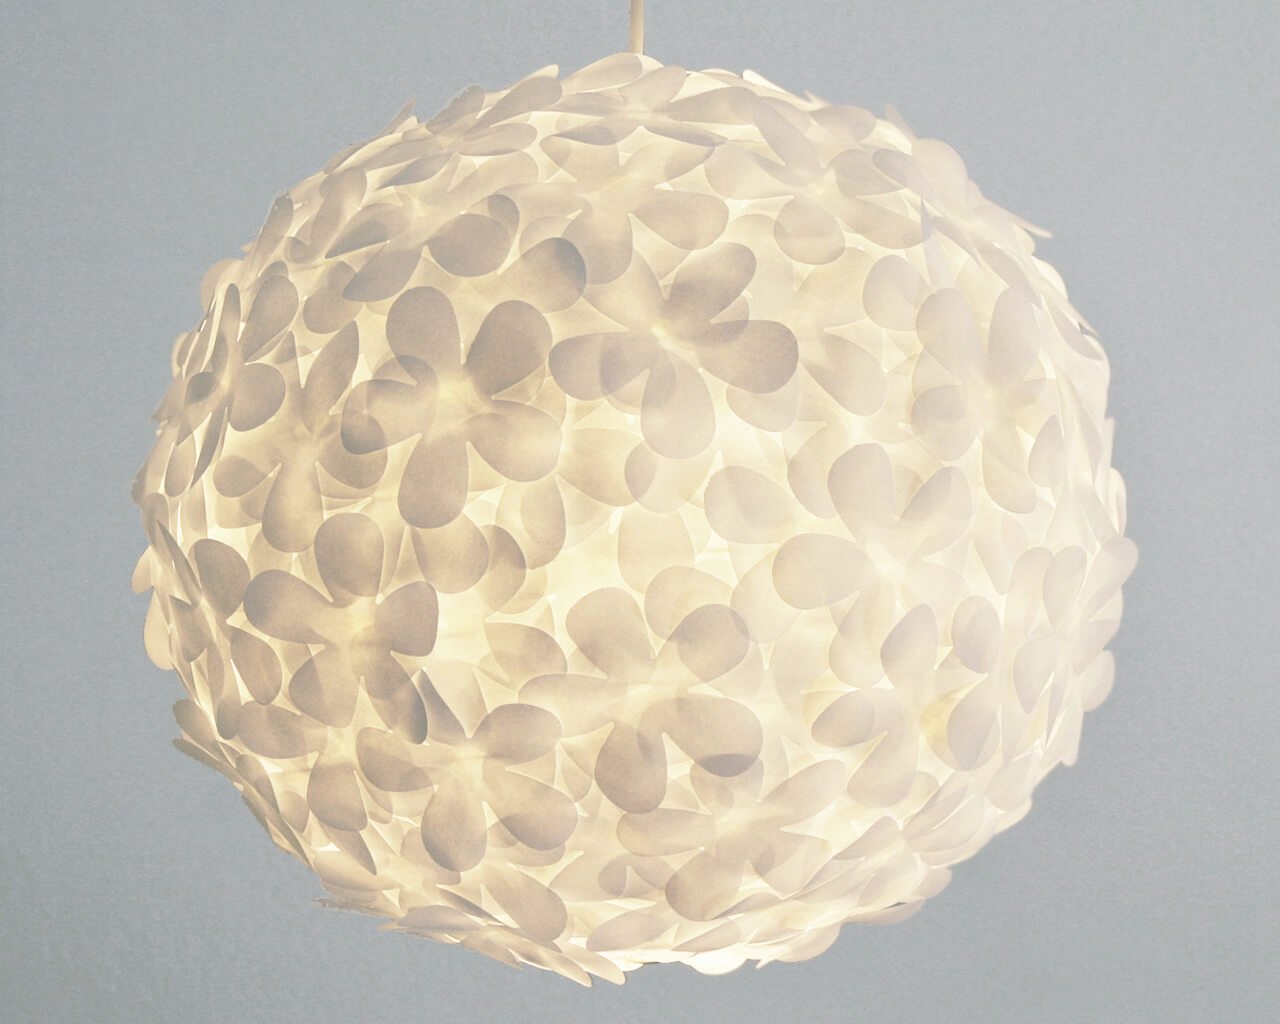 paper Lamps Design Ideas